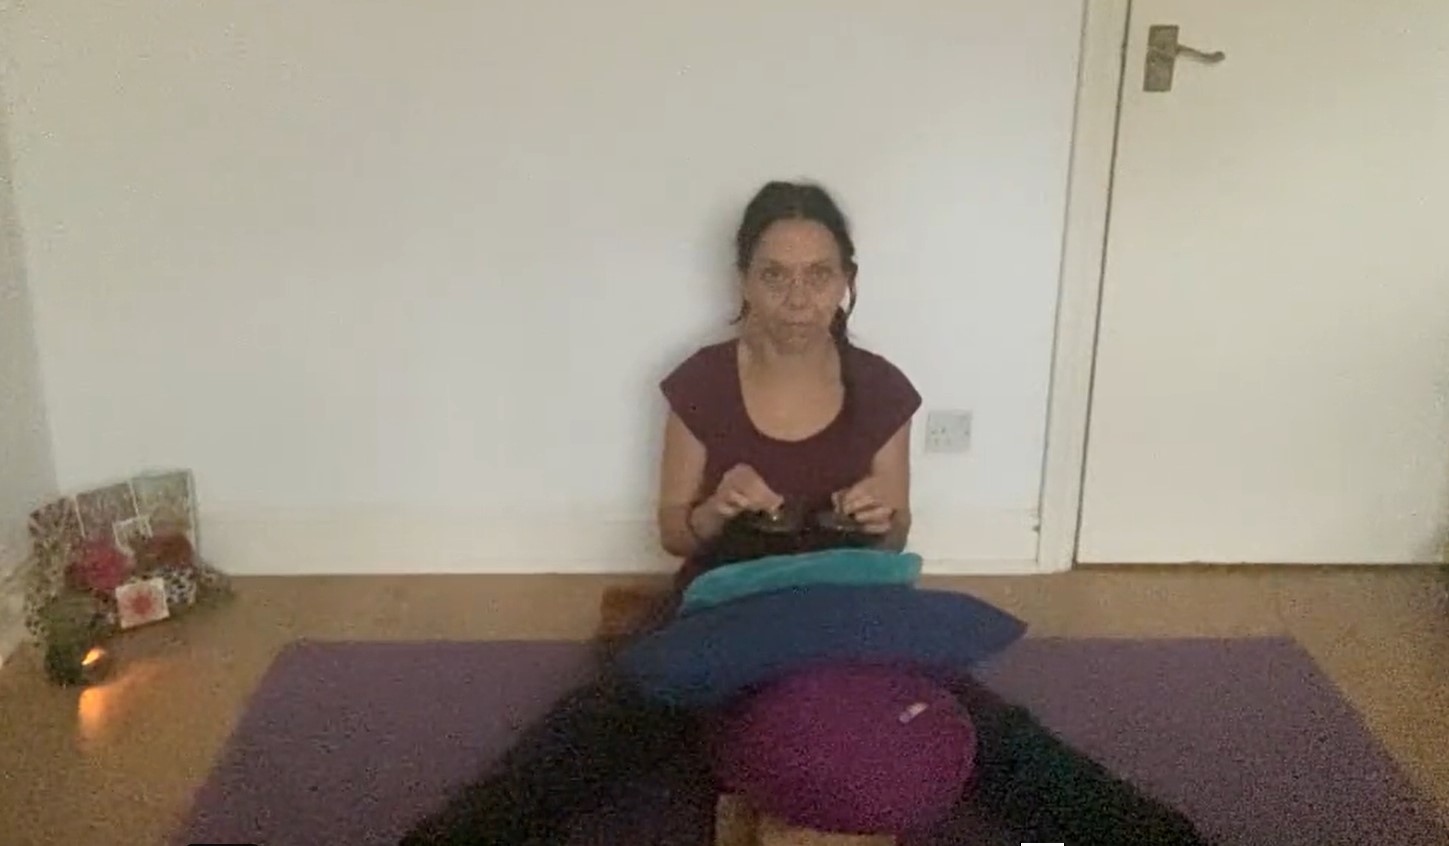 Yoga suave – Gentle yoga